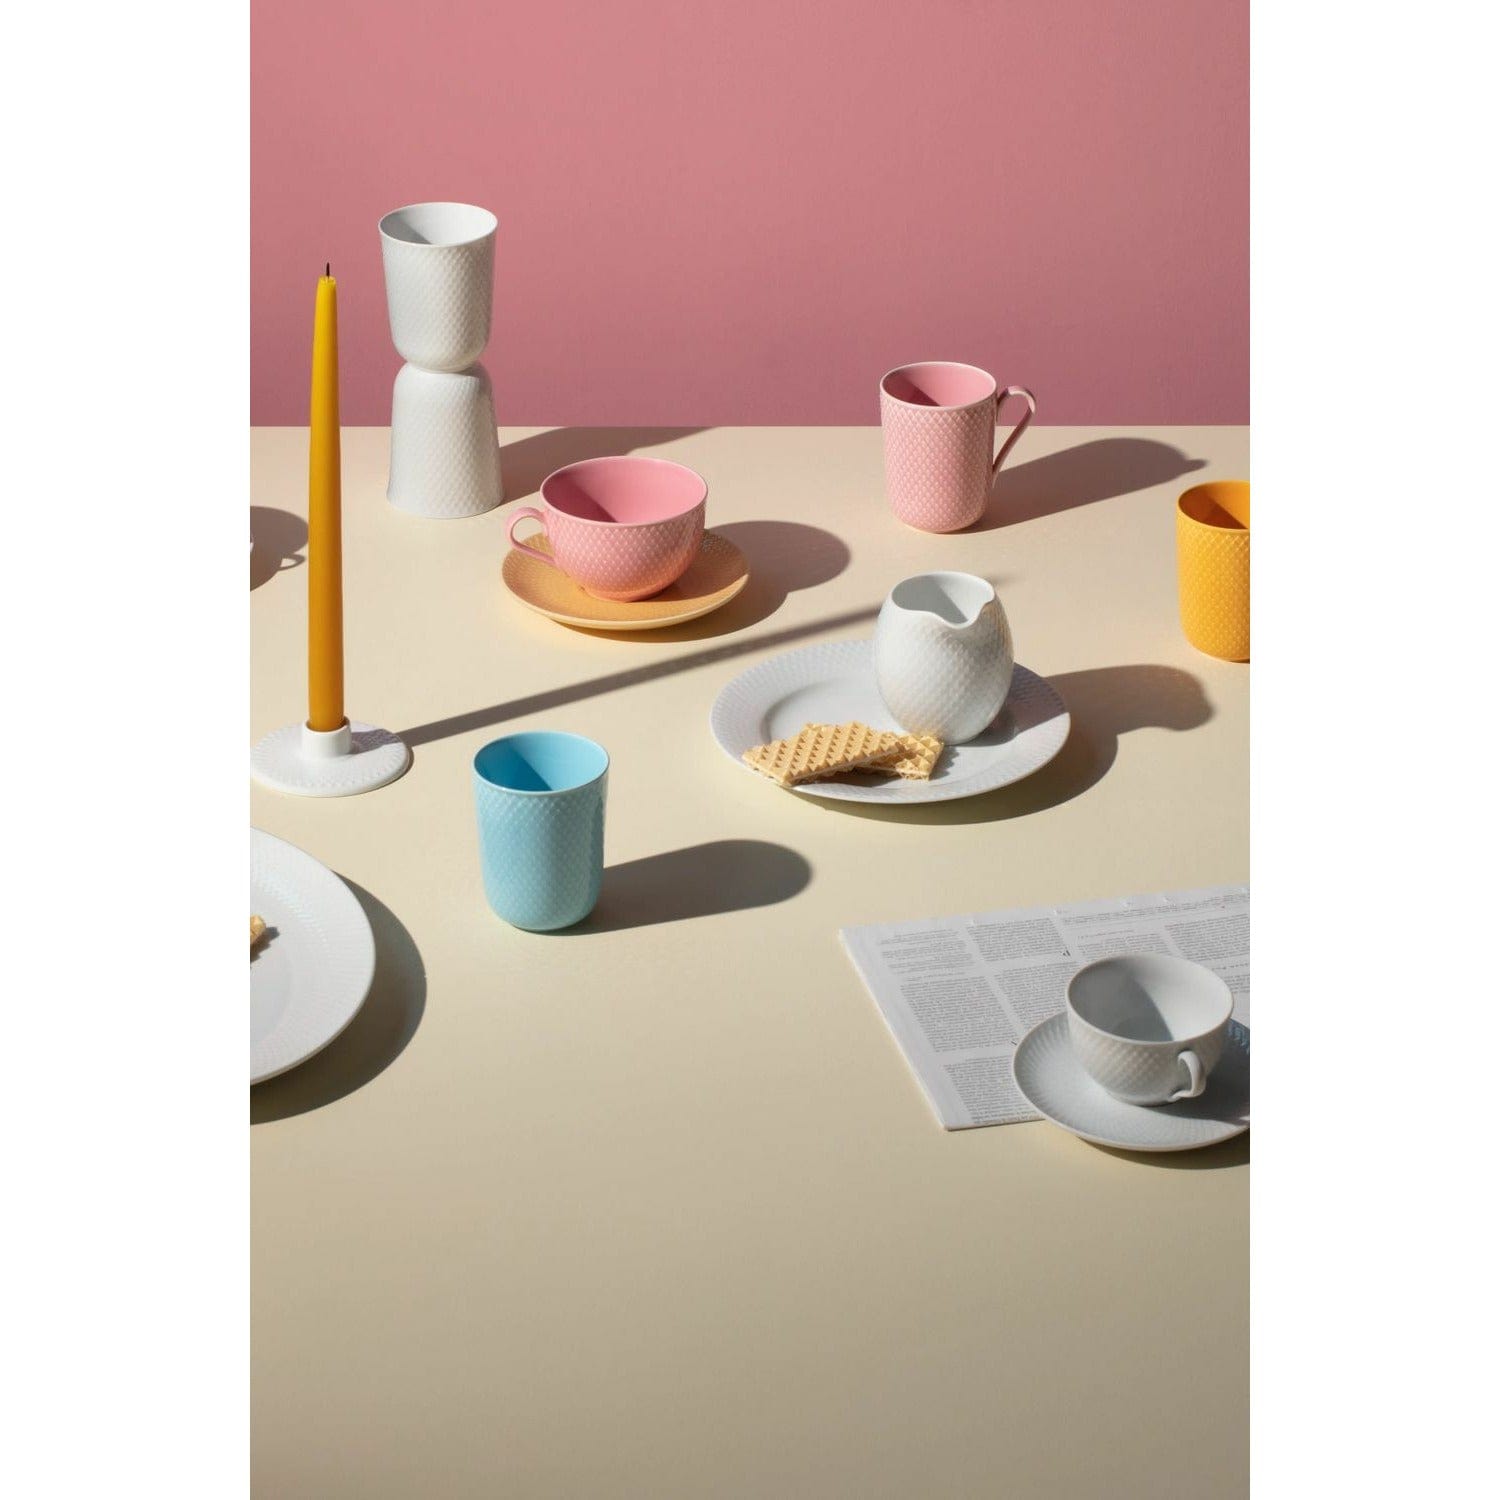 Lyngby Porcelæn Rhombe Color Tea Cup med tefat, rosa/beige